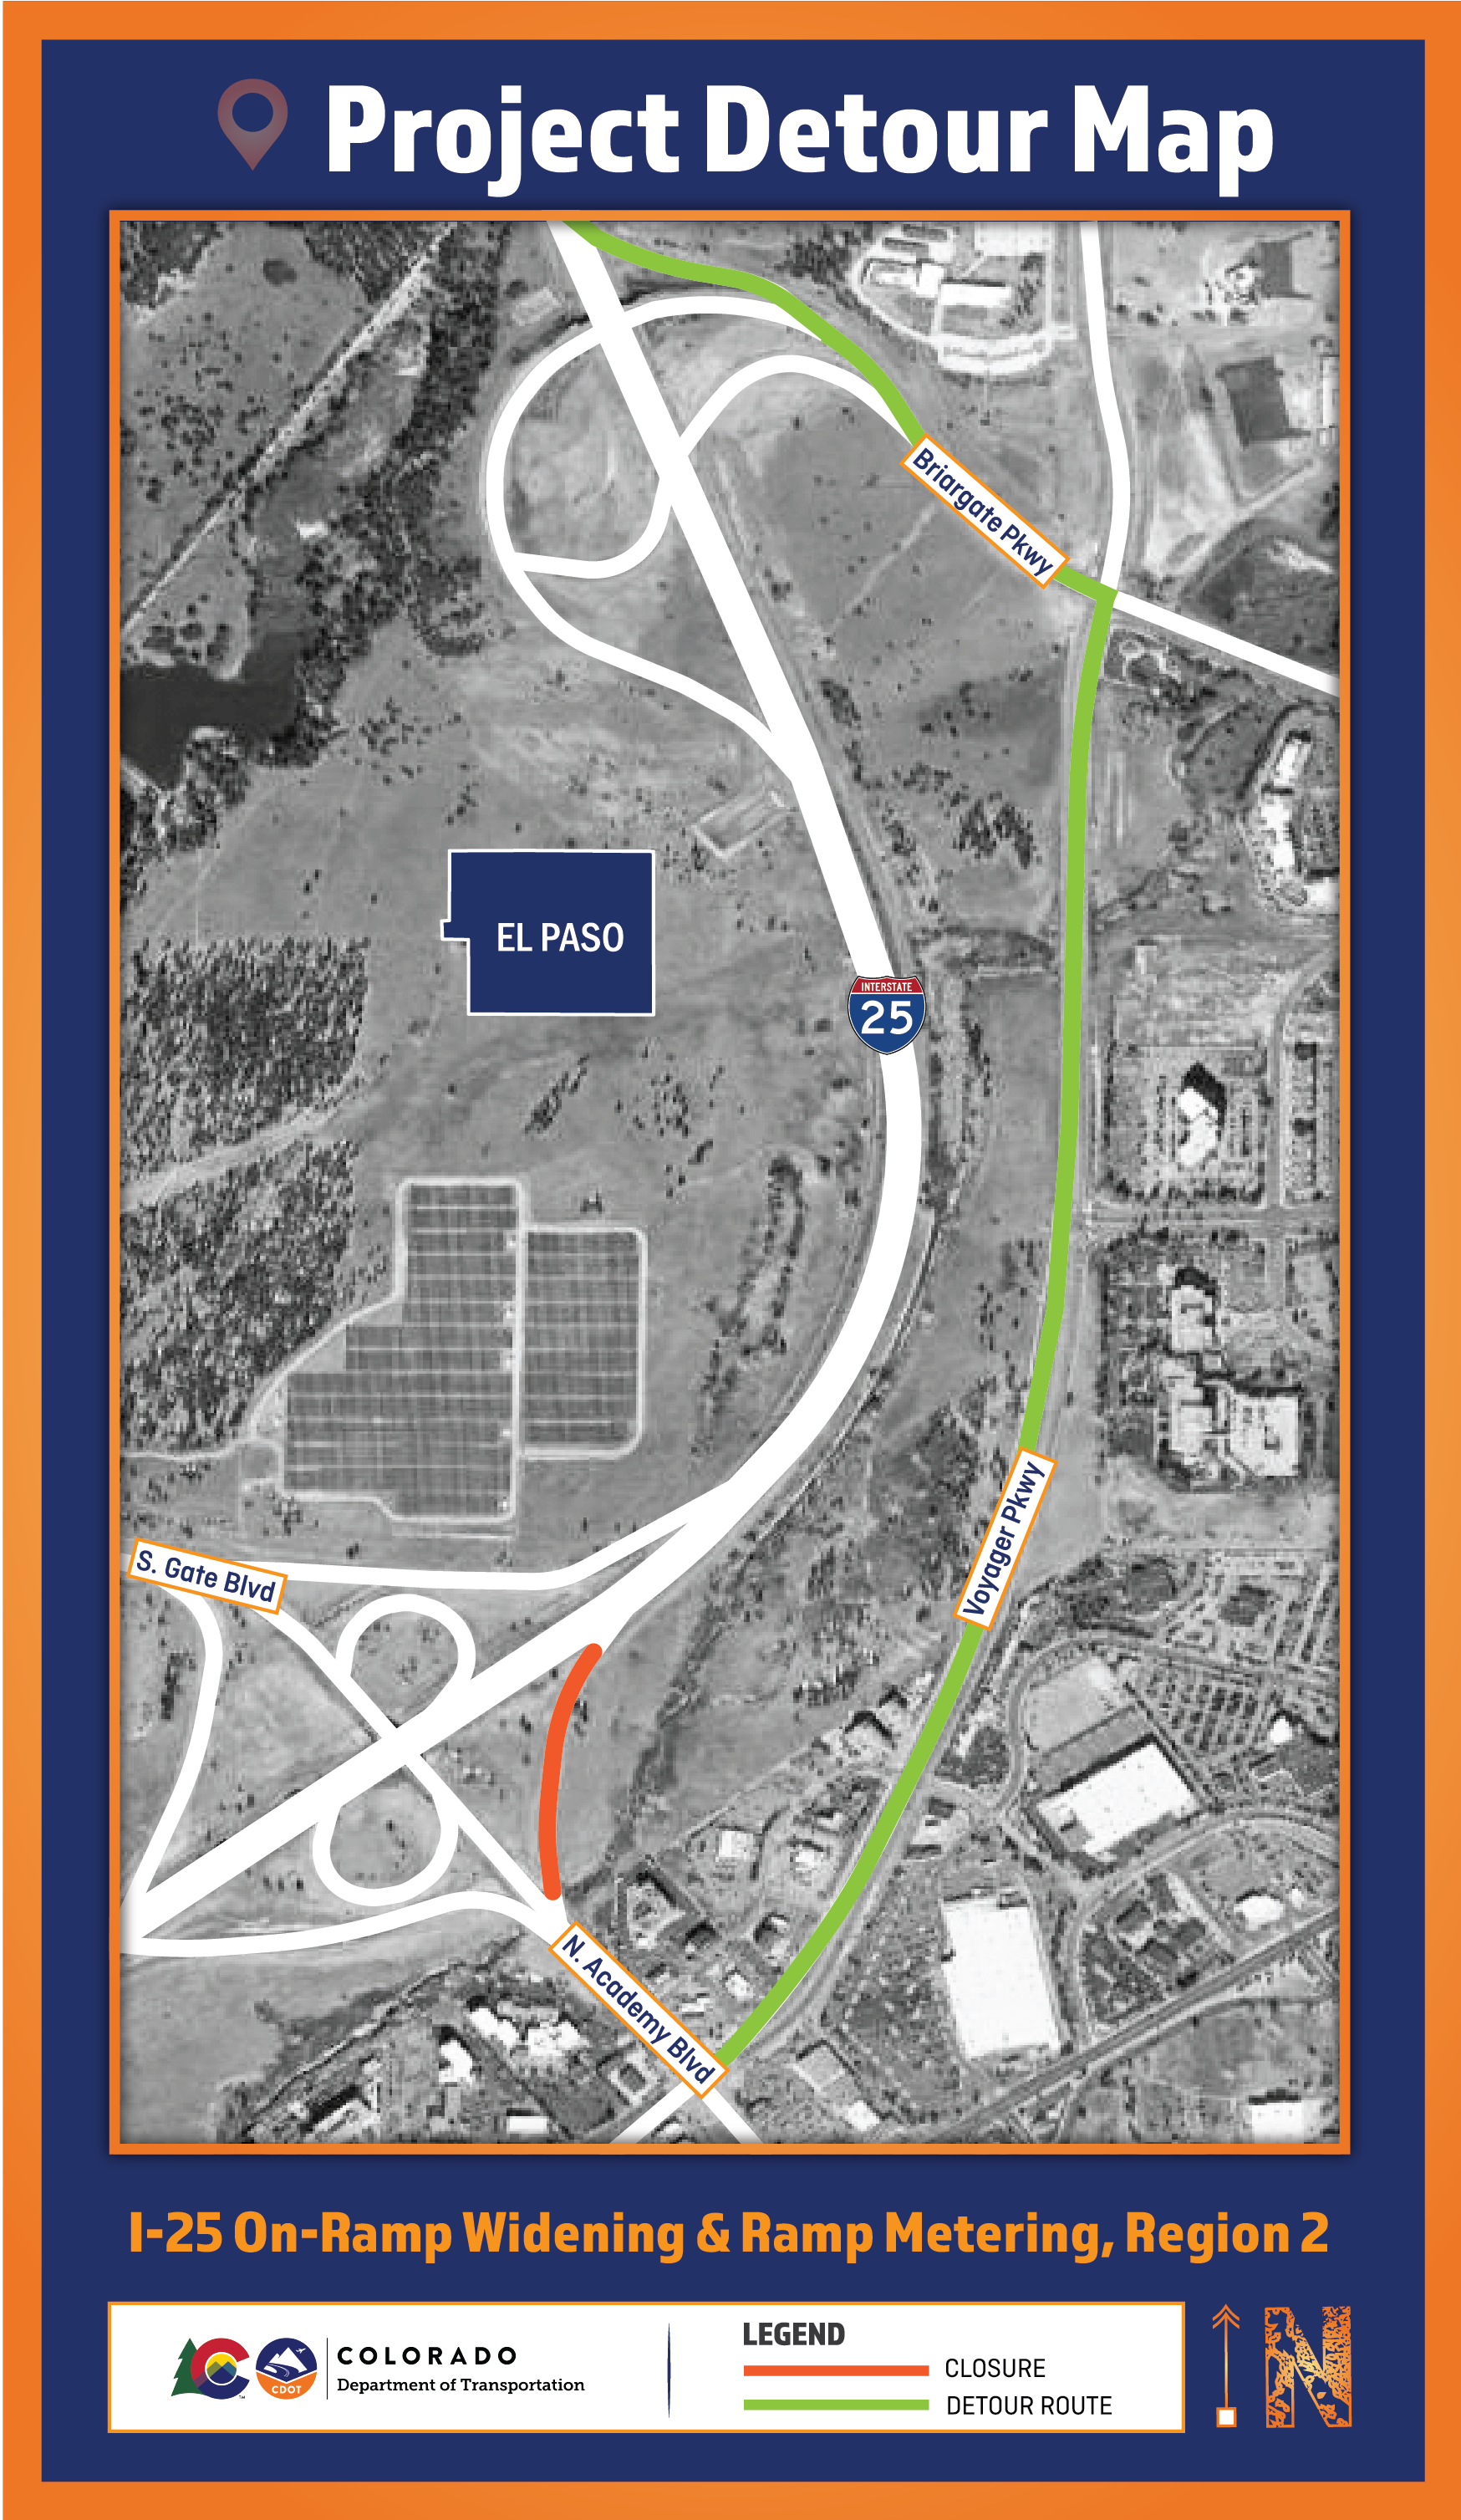 I-25 On-Ramp Widening and Ramp Metering R2 Detour Maps 2 8.18.22-01.png detail image